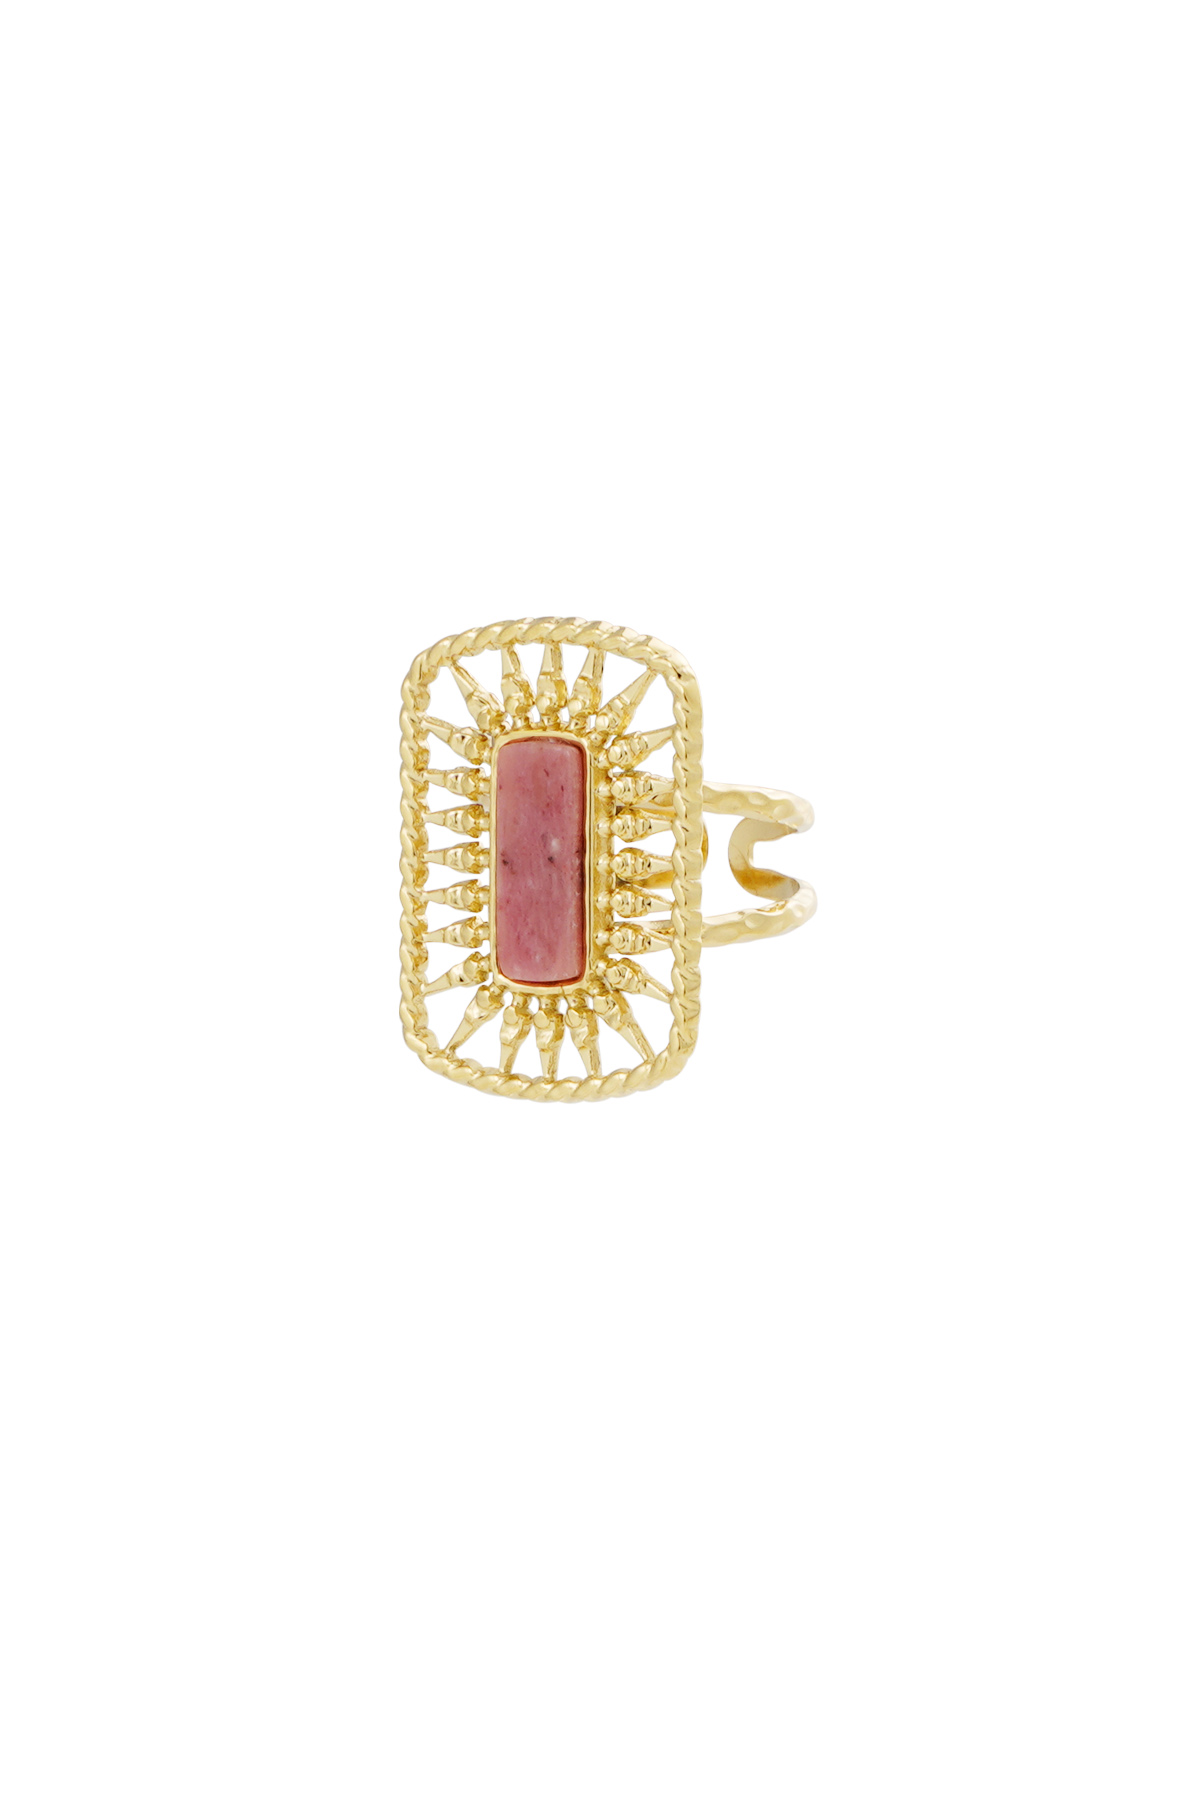 Ring lange steen - goud/roze